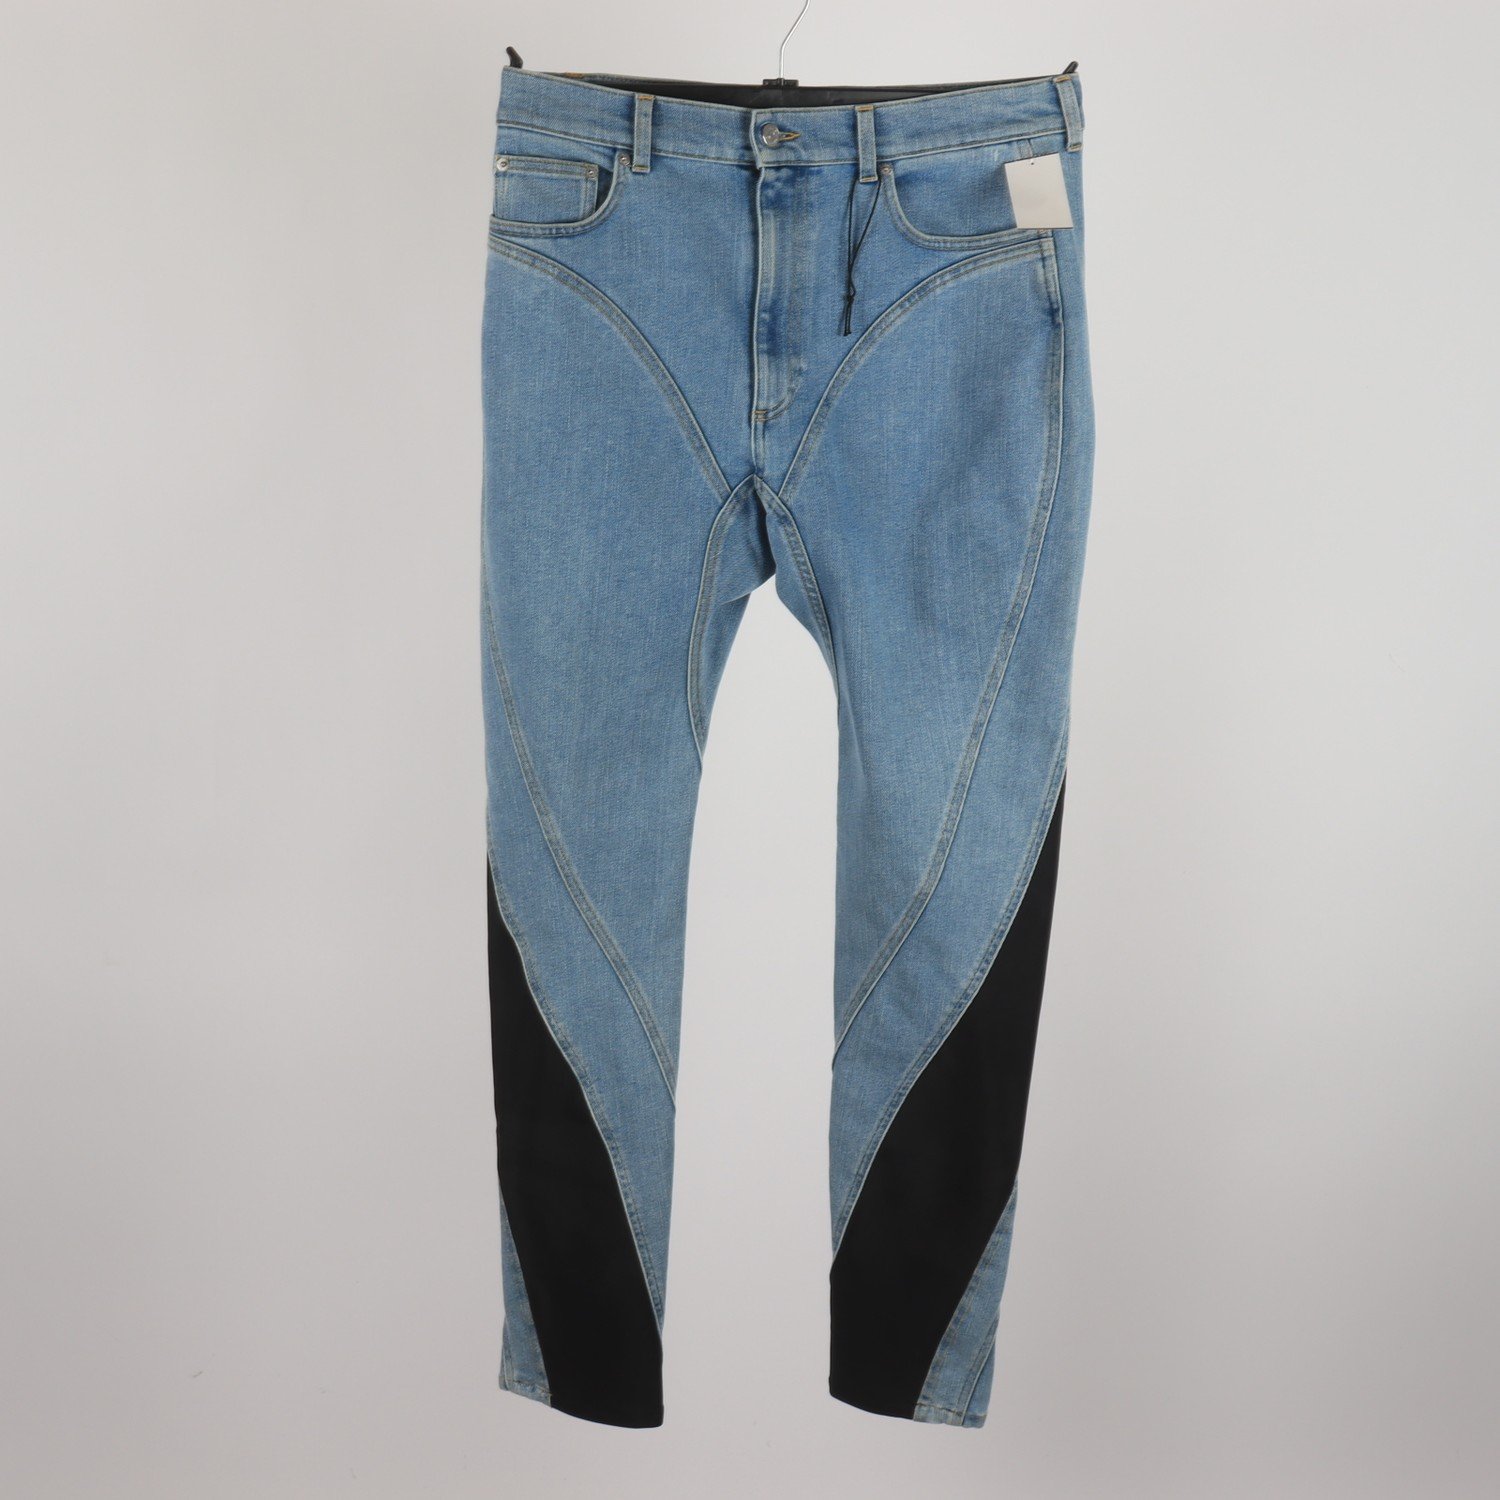 Jeans, Mugler, blå, svart, stl. 46